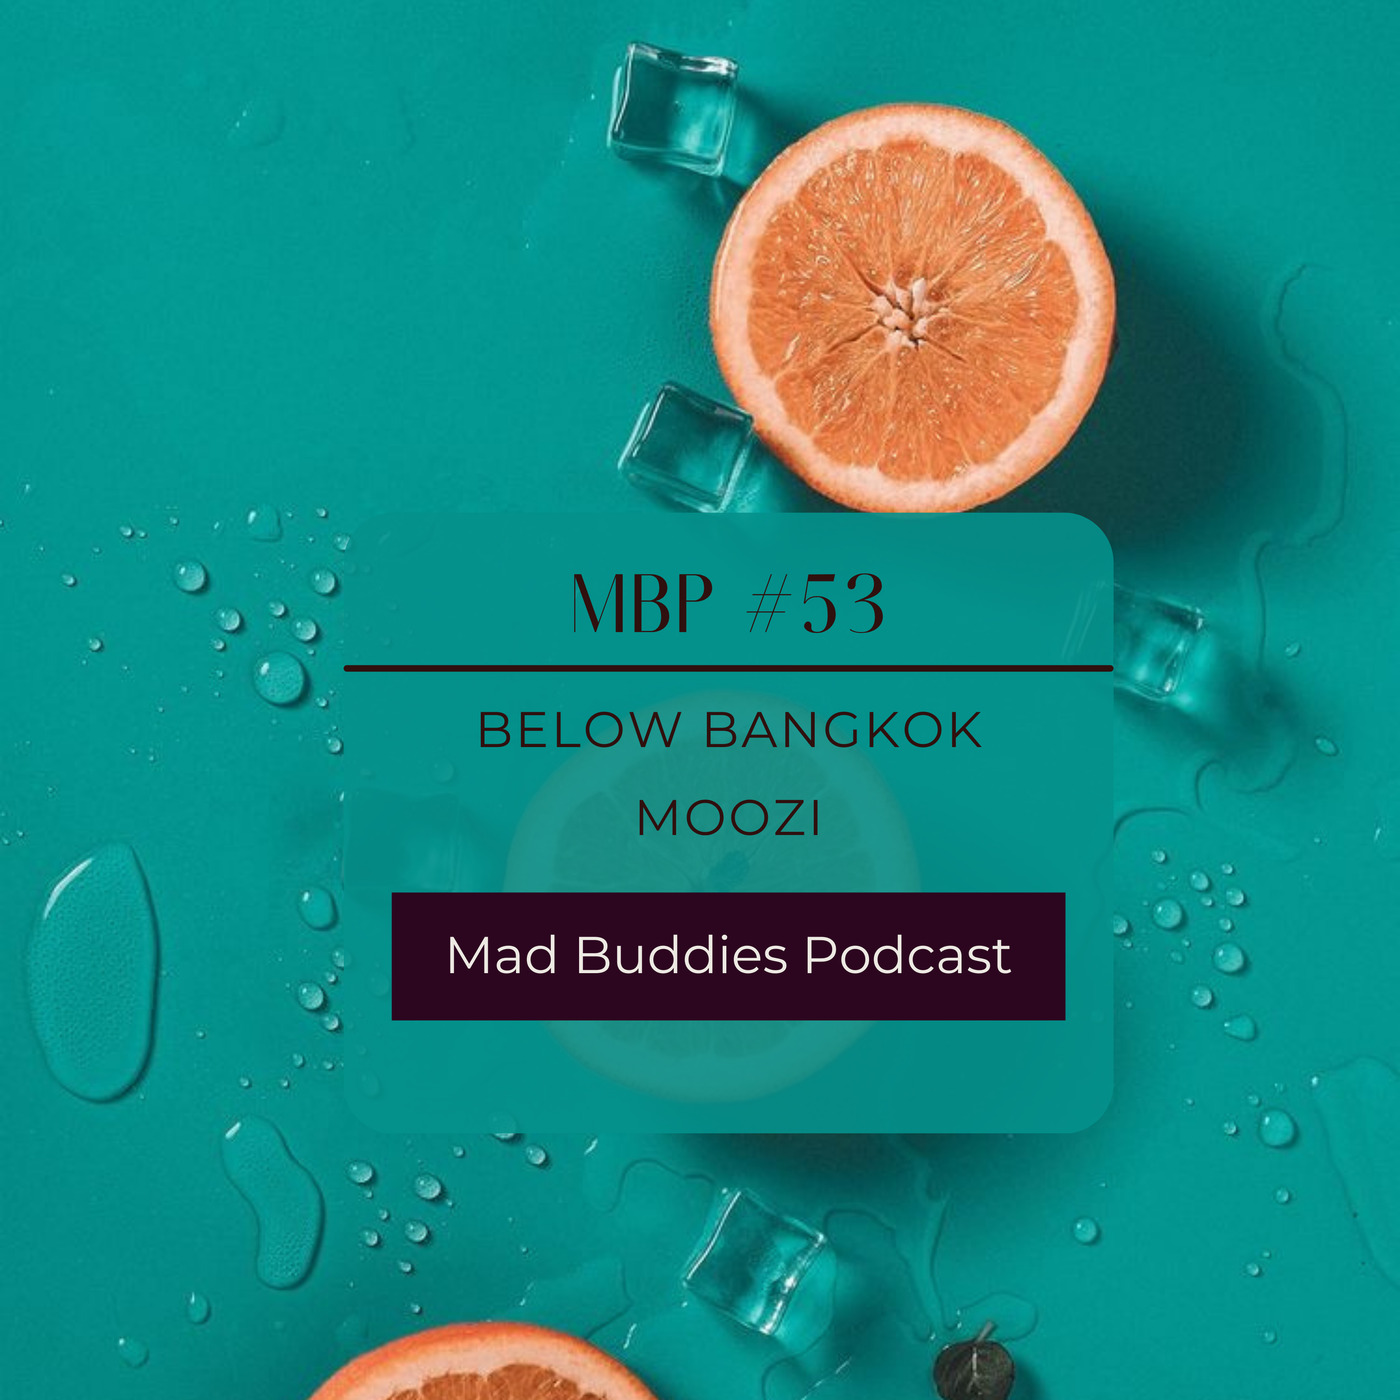 MBP #53 guest mix by Below Bangkok